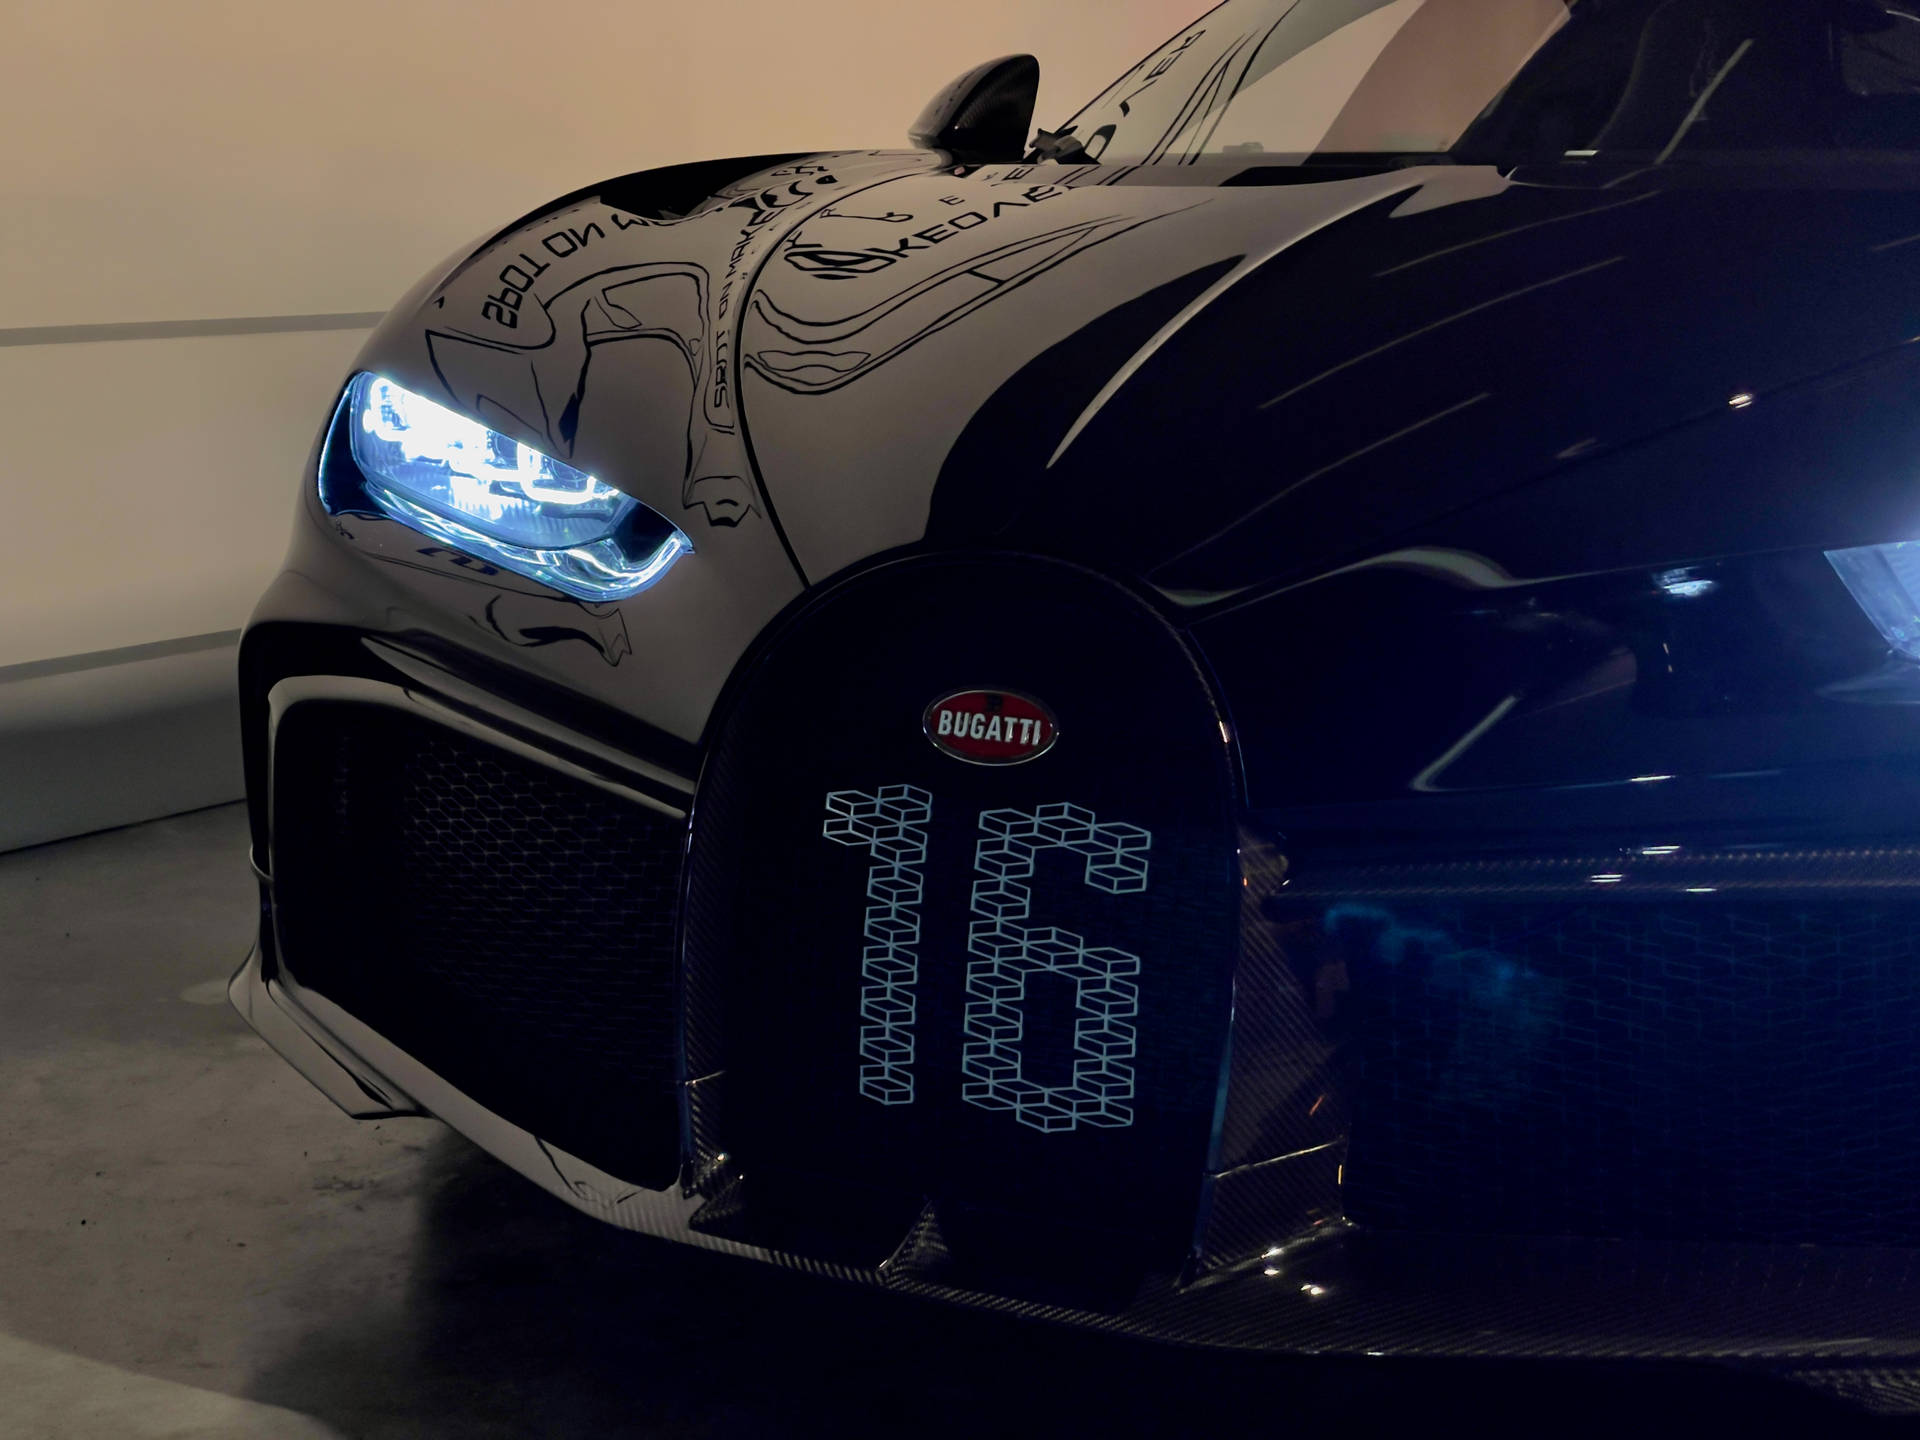 4032X3024 Bugatti Wallpaper and Background